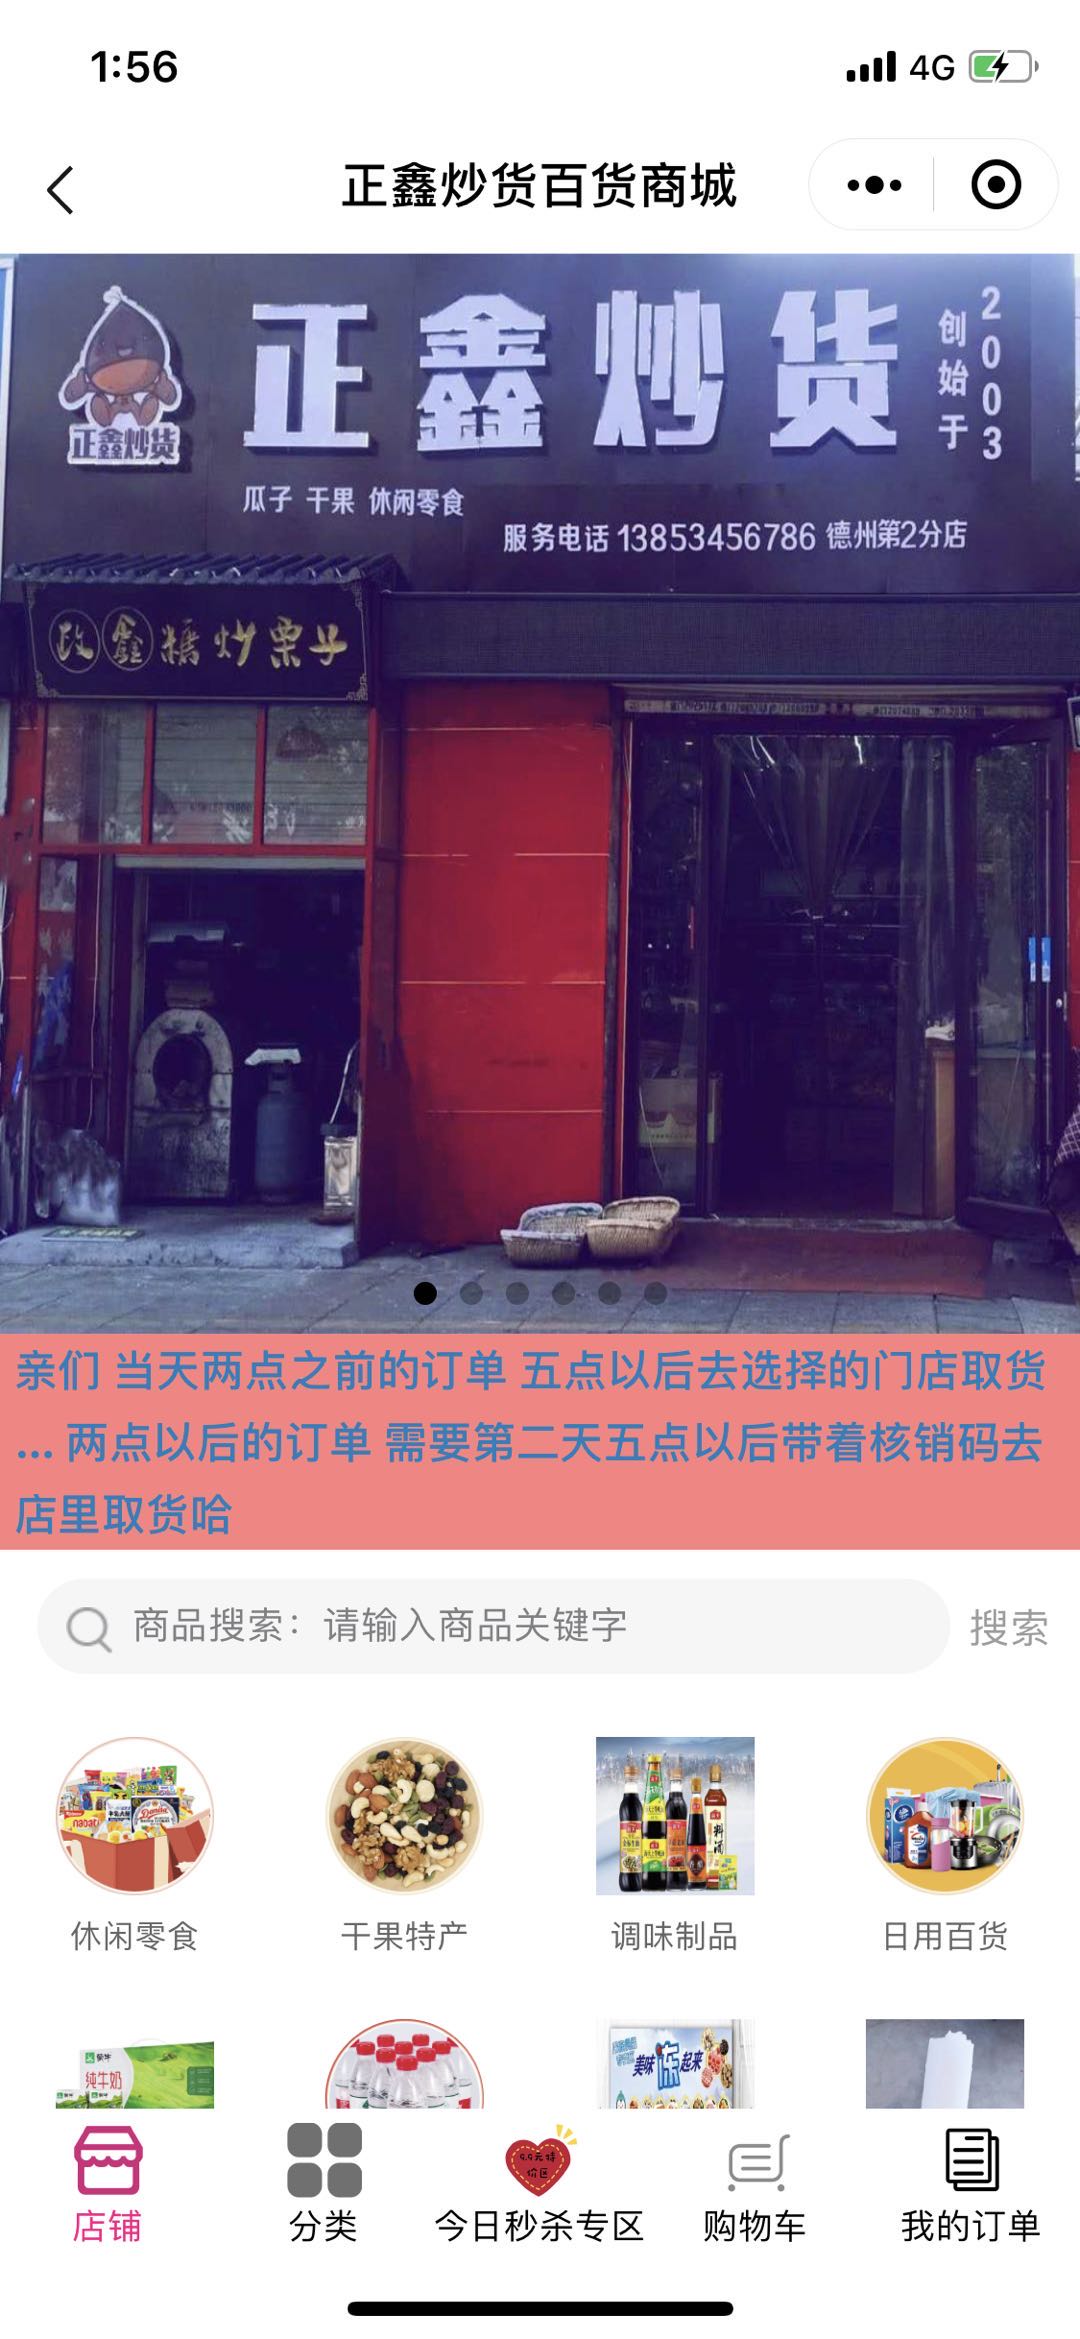 微信正鑫炒货百货商城小程序效果图预览